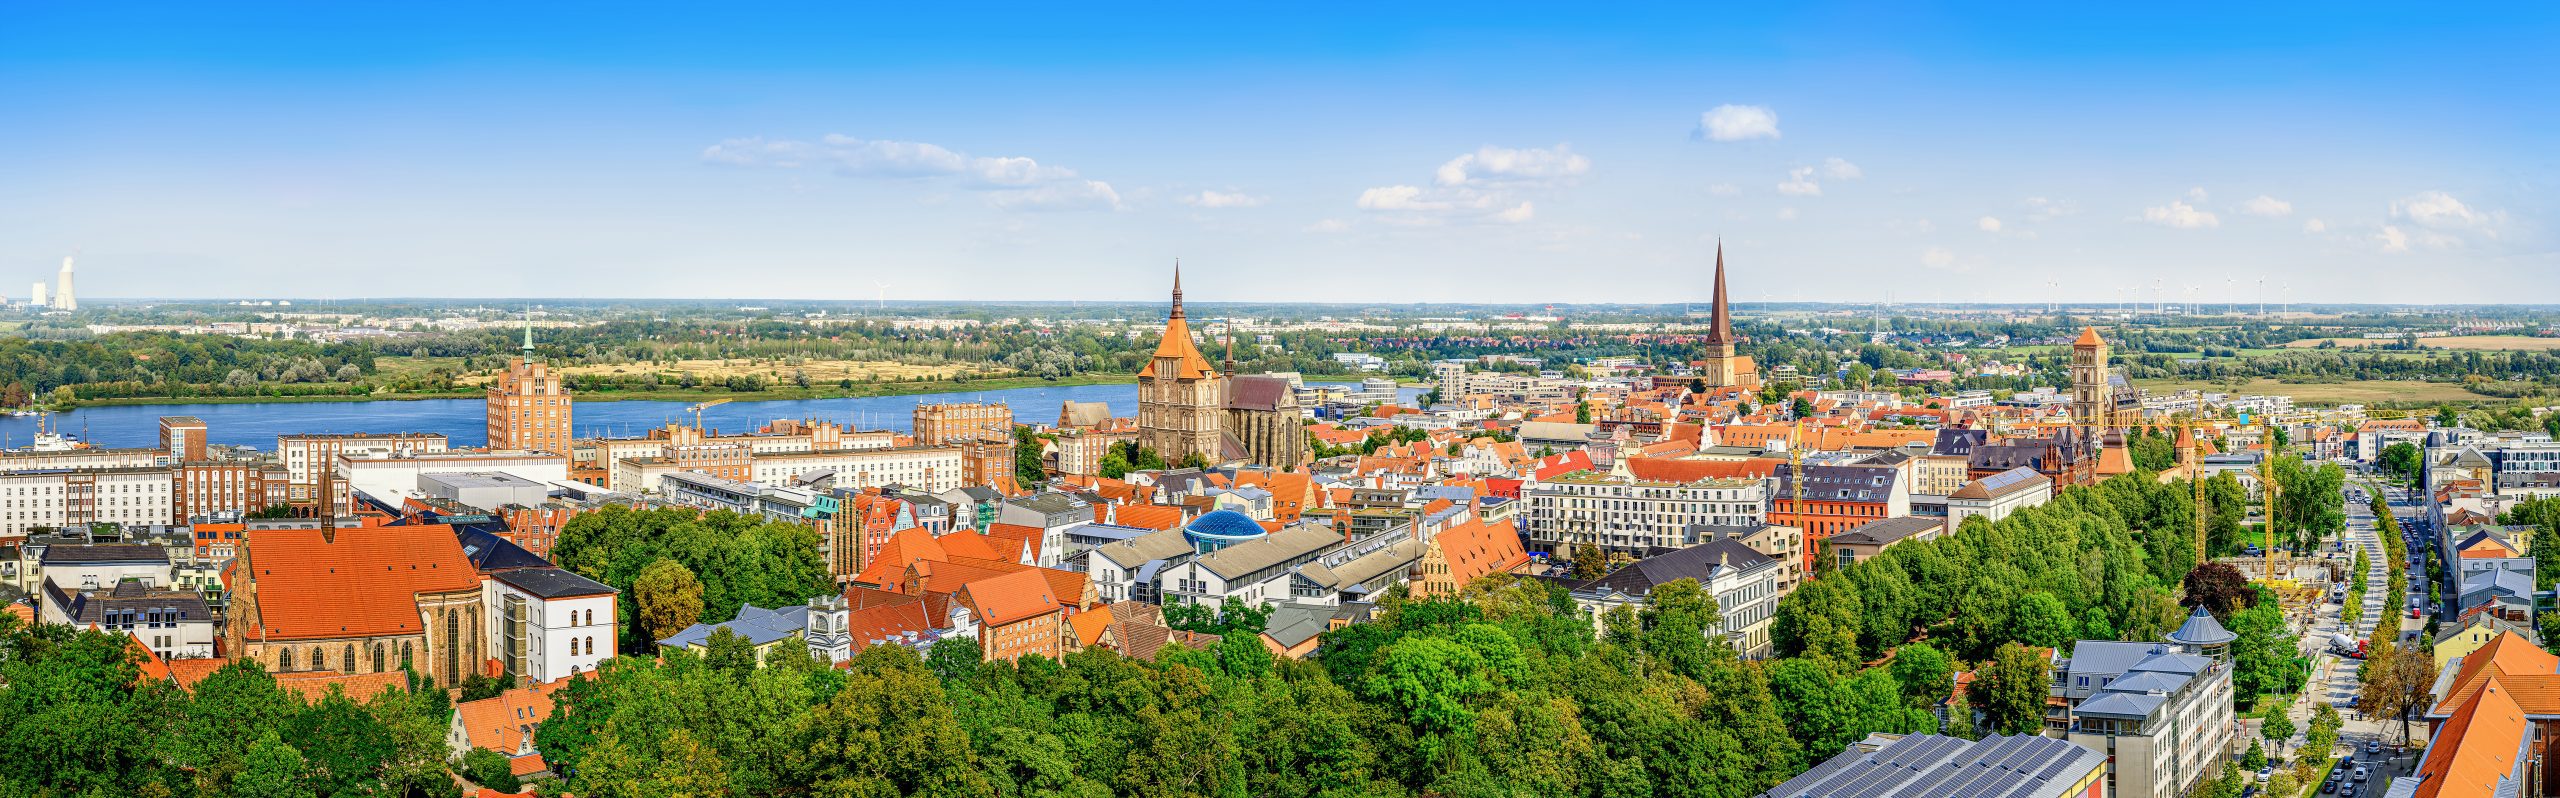 Überblick über Rostock mit Altstadt und Hafen